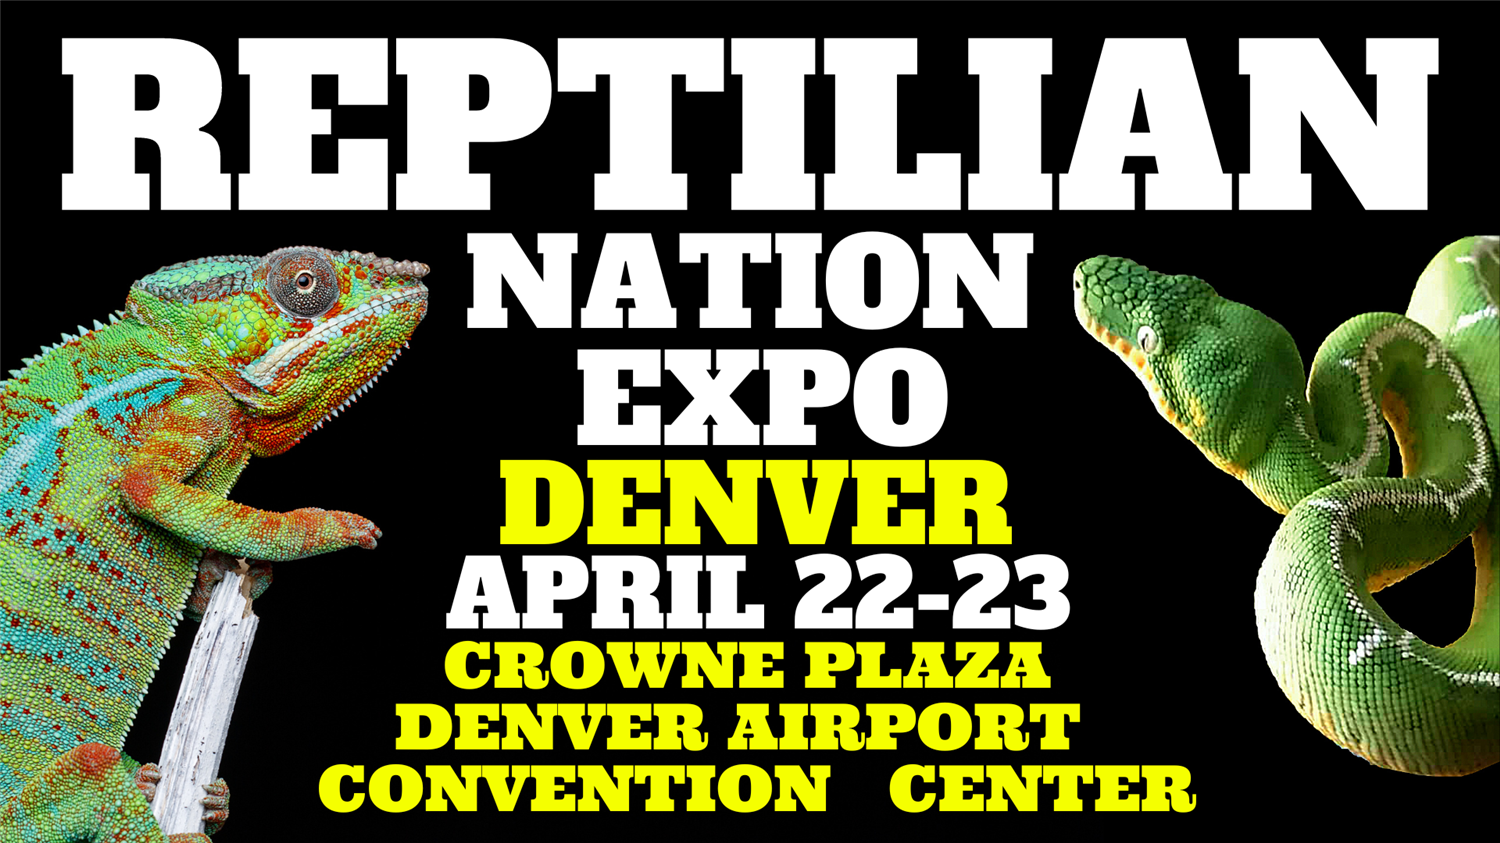 REPTILIAN NATION EXPO DENVER Information